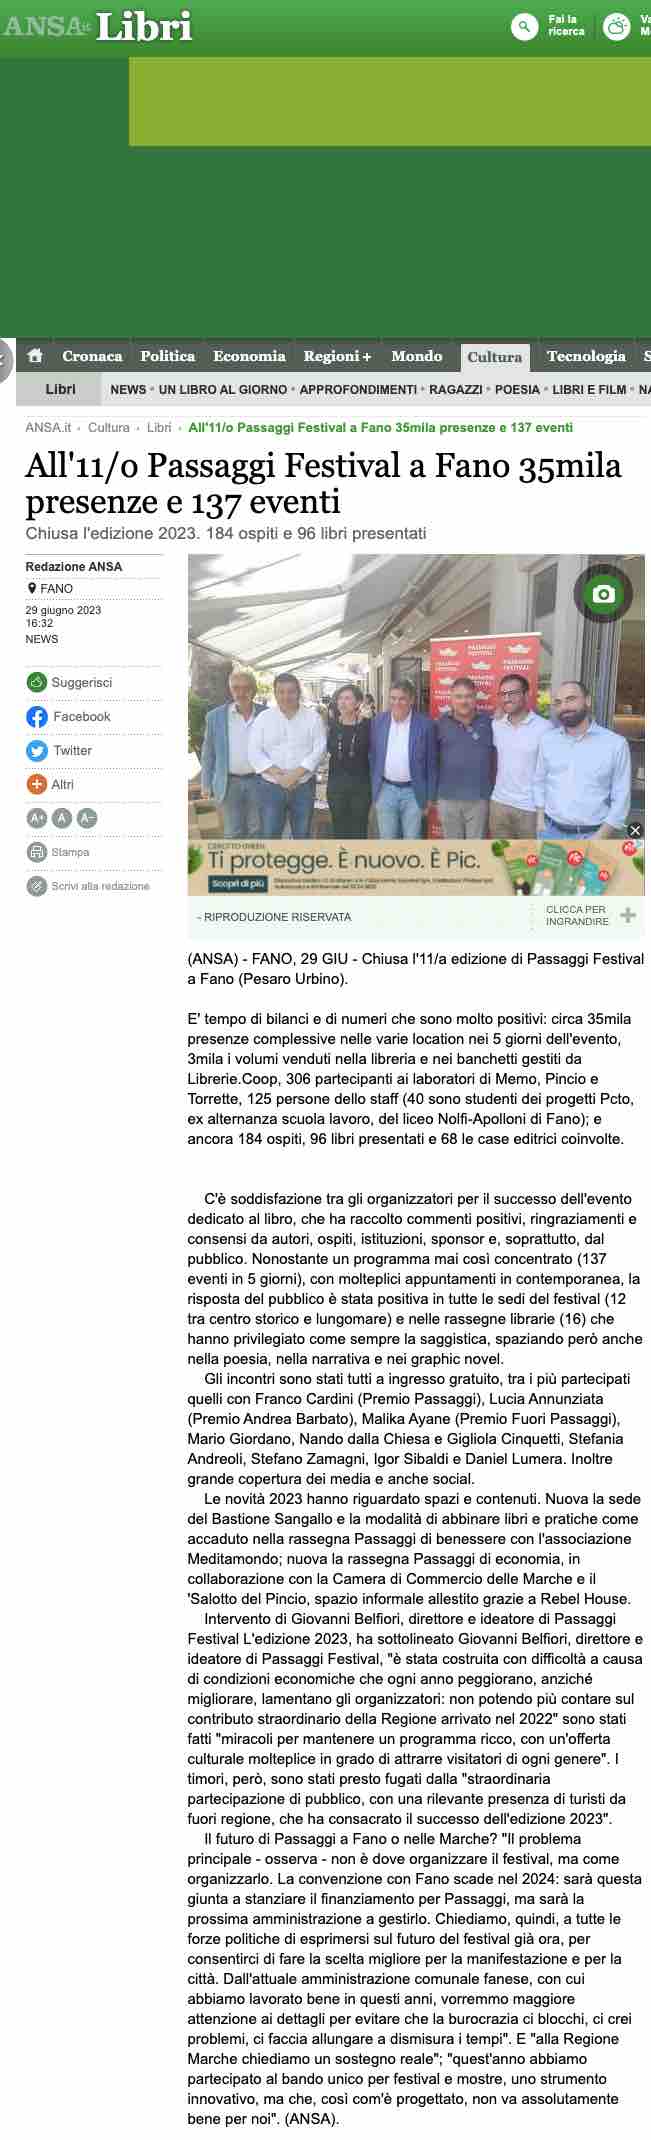 Ansa – All’11/o Passaggi Festival a Fano 35mila presenze e 137 eventi